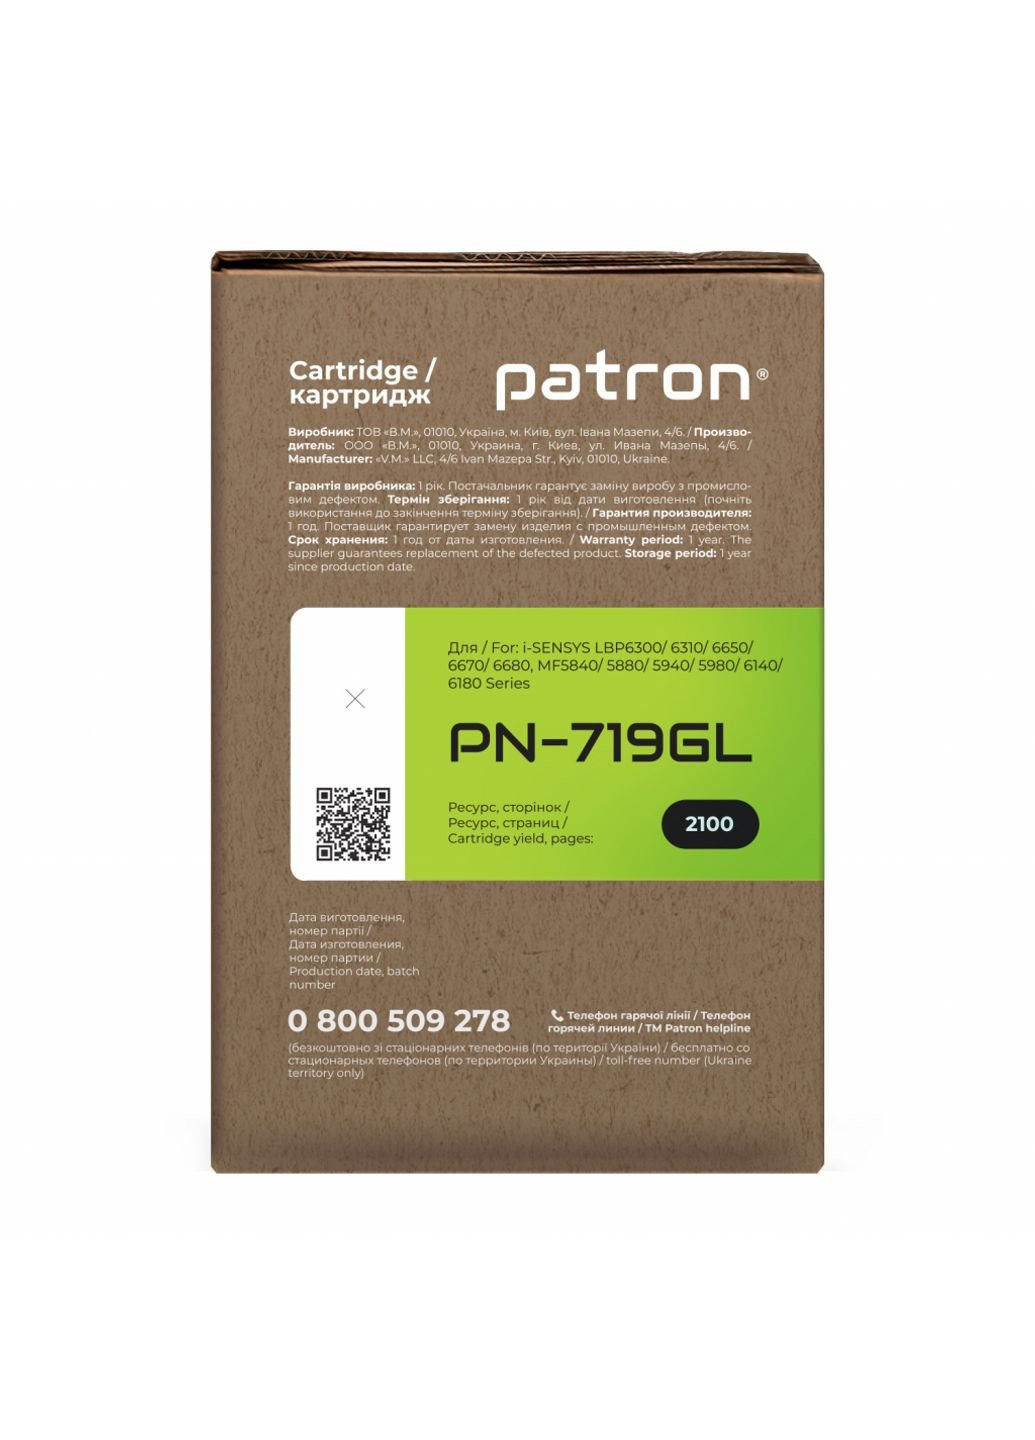 Картридж (PN-719GL) Patron canon 719 green label (247614818)